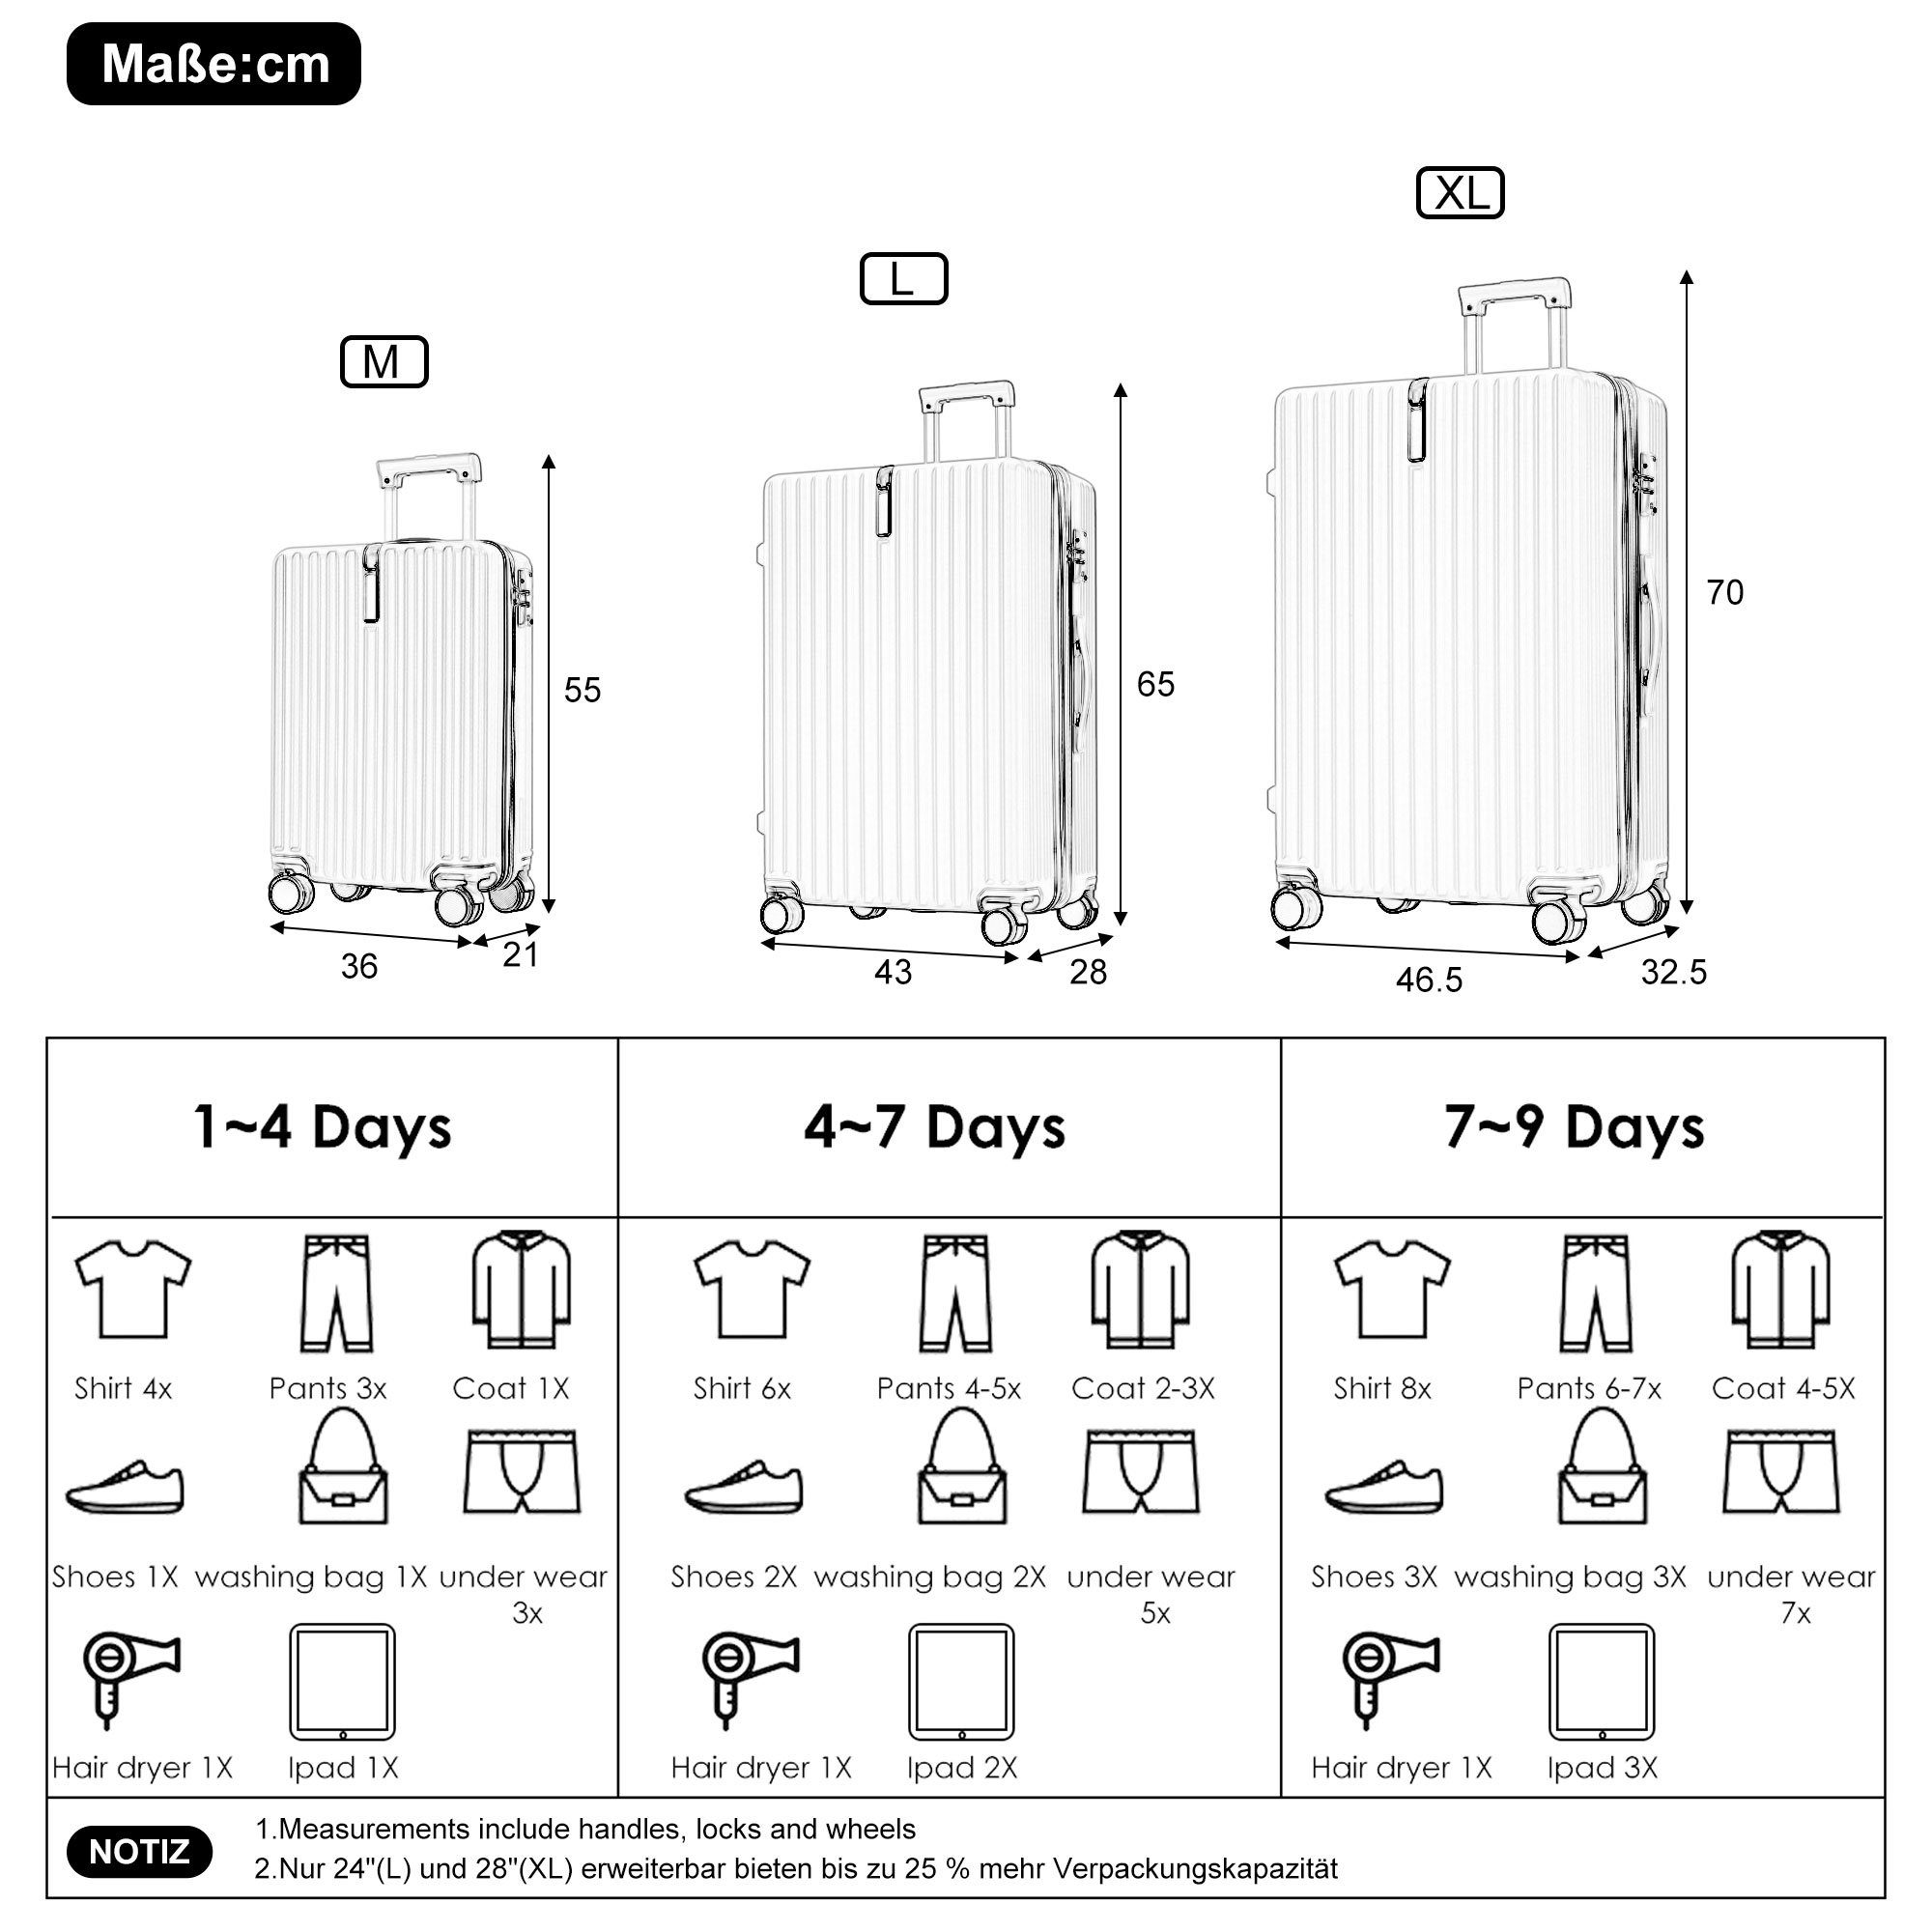 4 Schwarz Trolleyset Ulife Kofferset Handgepäck tlg) TSA (3 Zollschloss, Rollen, ABS-Material, Reisekoffer